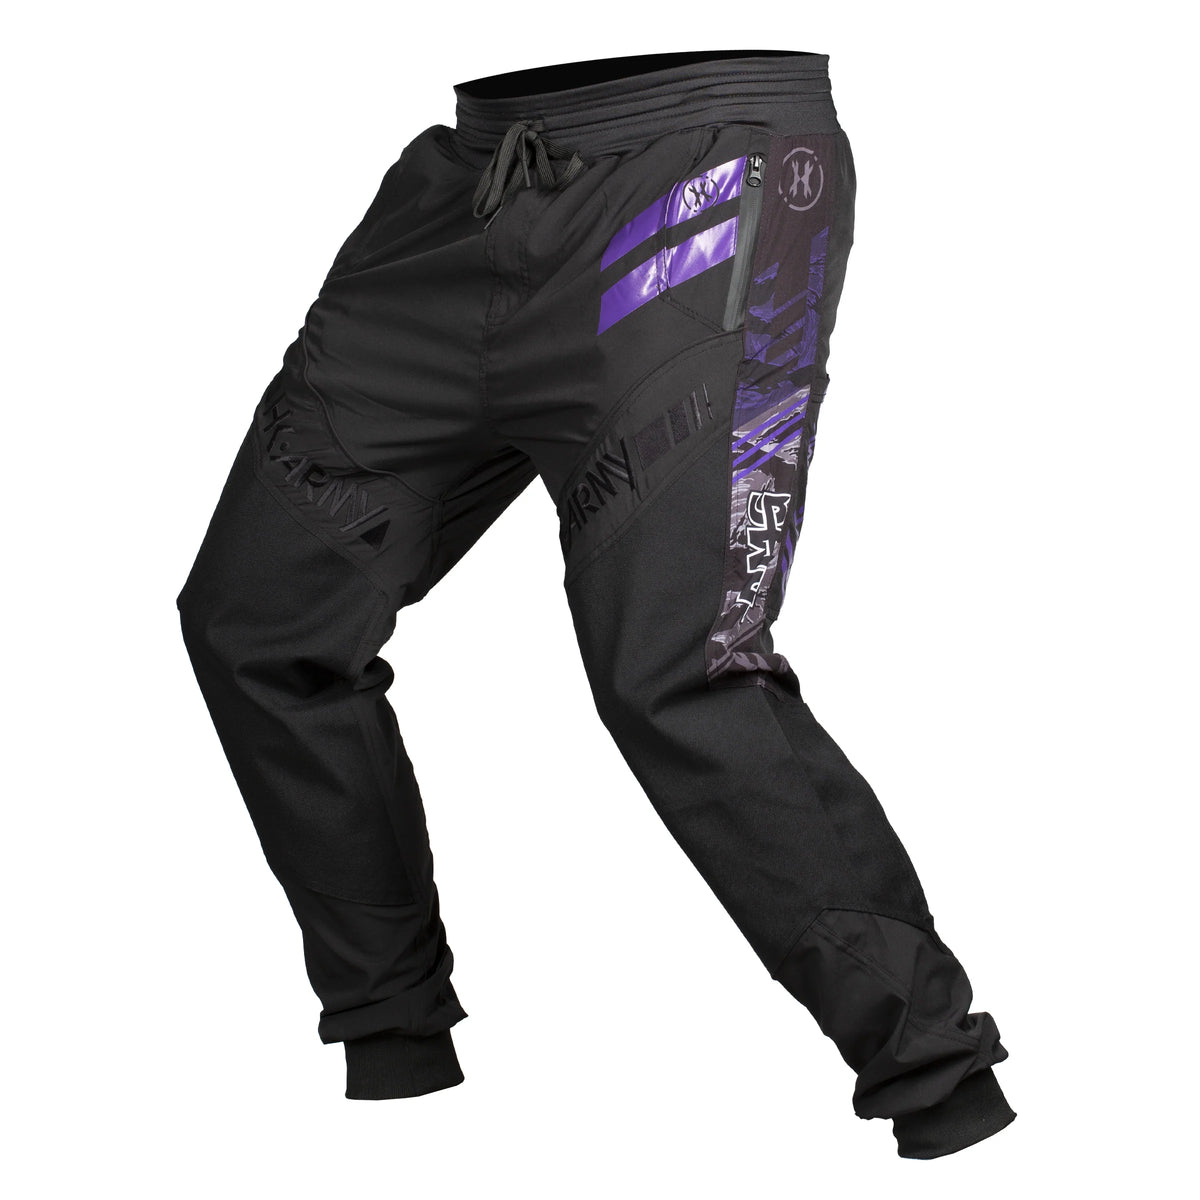 Rockstar Energy Grit v3 Custom Paintball Pants